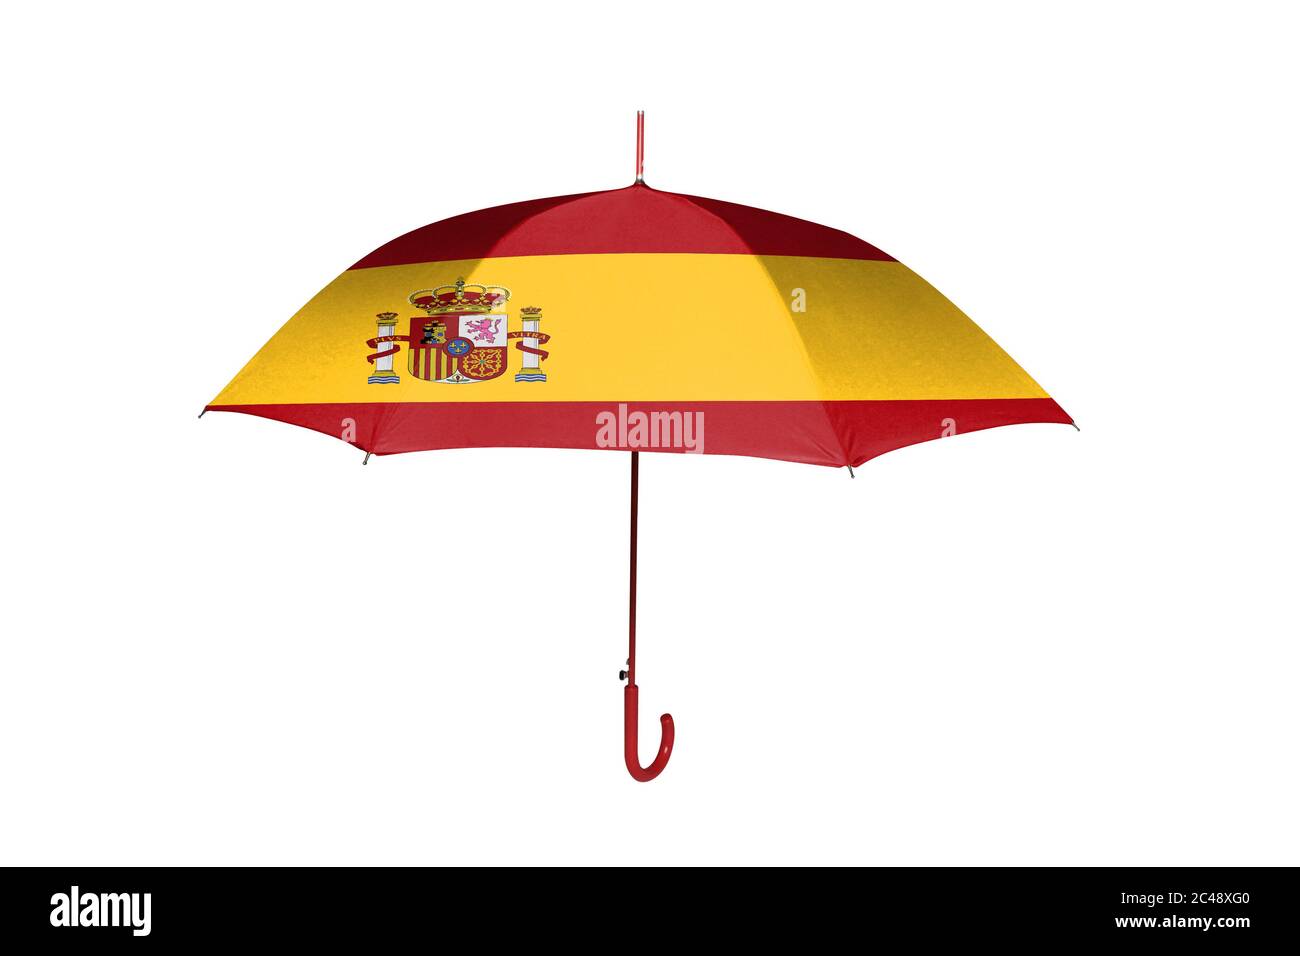 Regenschirm mit Flagge von Spanien isoliert auf weißem Hintergrund  Stockfotografie - Alamy